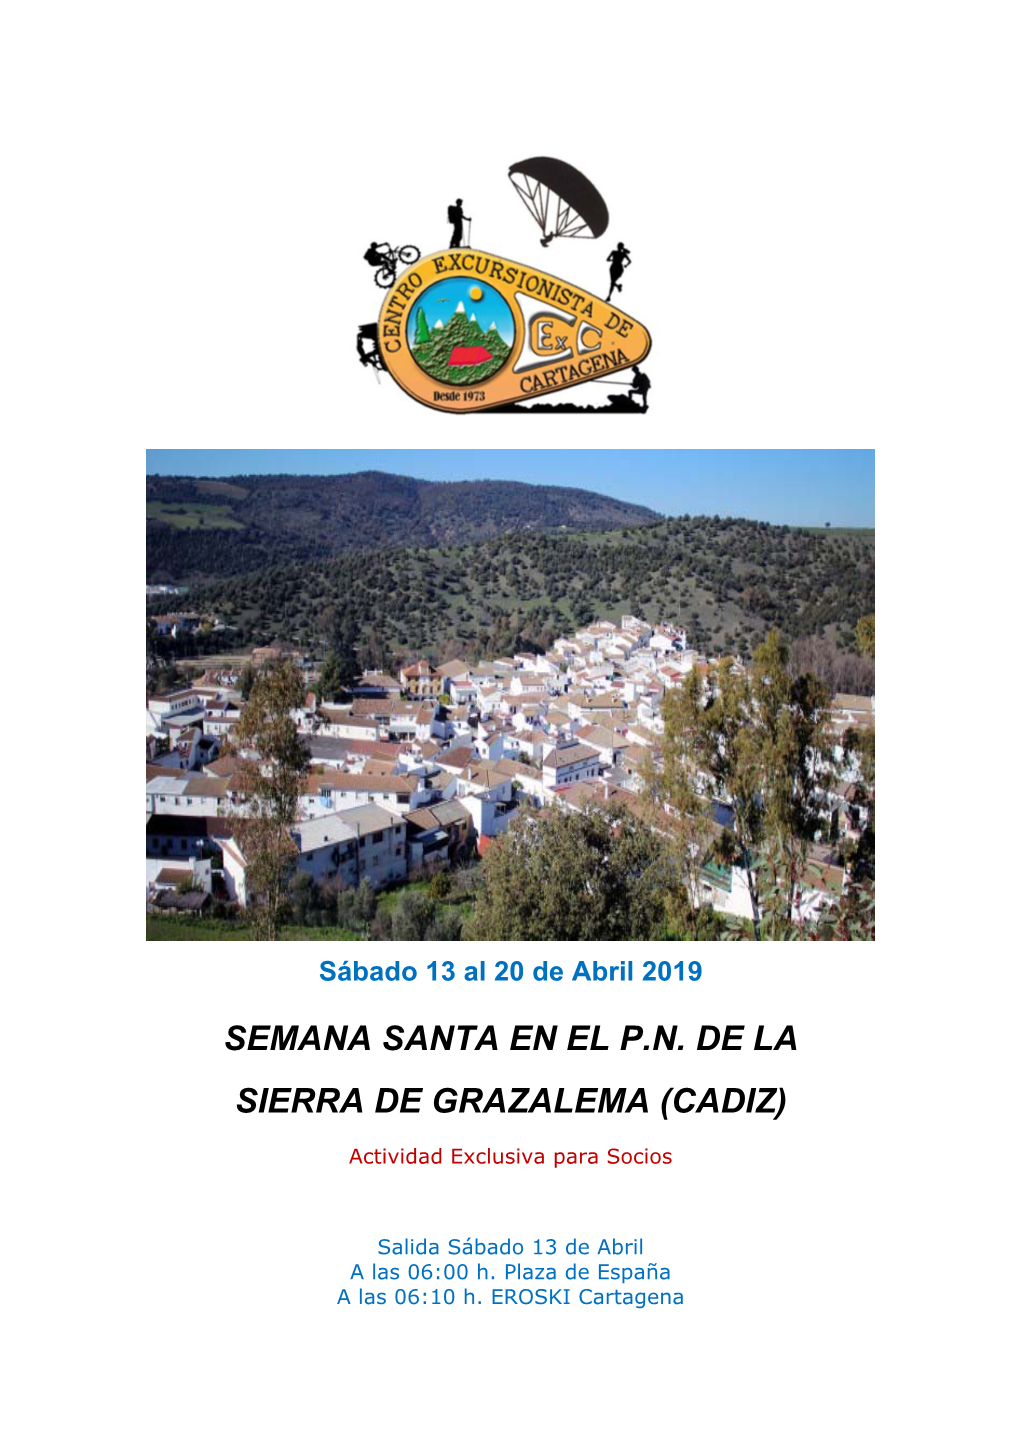 Semana Santa En El P.N. De La Sierra De Grazalema (Cadiz)